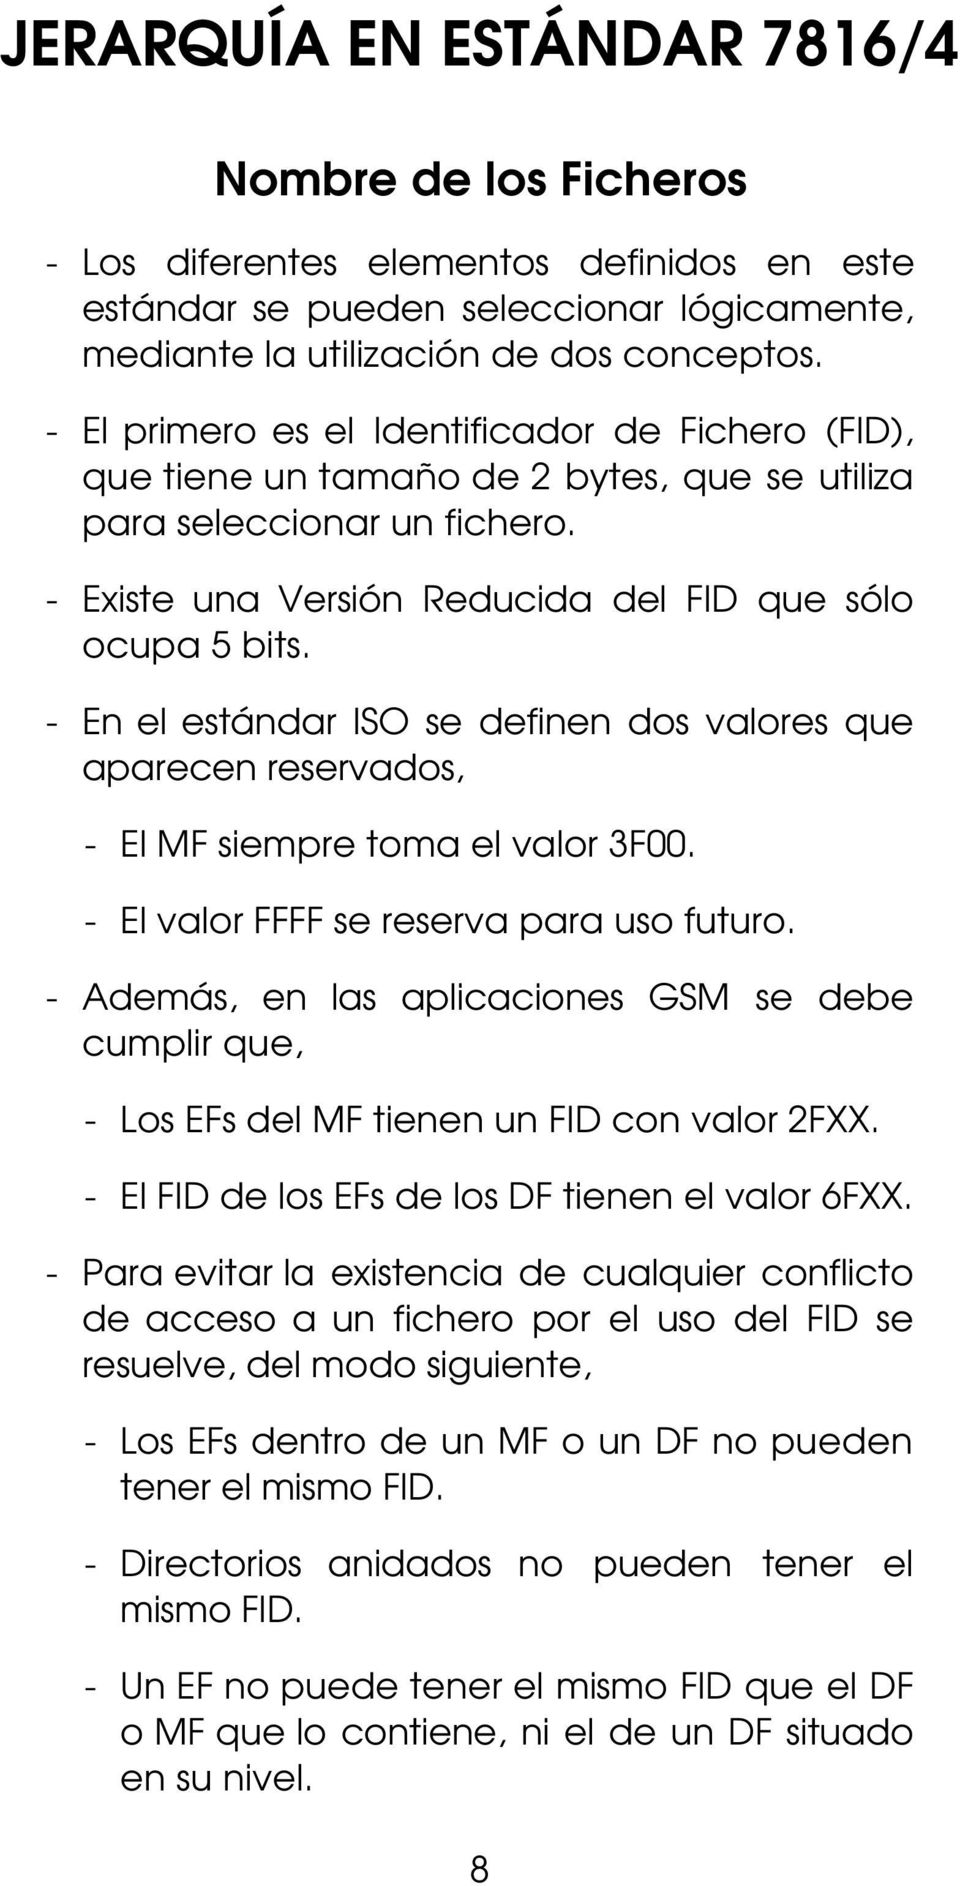 - En el estándar ISO se definen dos valores que aparecen reservados, - El MF siempre toma el valor 3F00. - El valor FFFF se reserva para uso futuro.